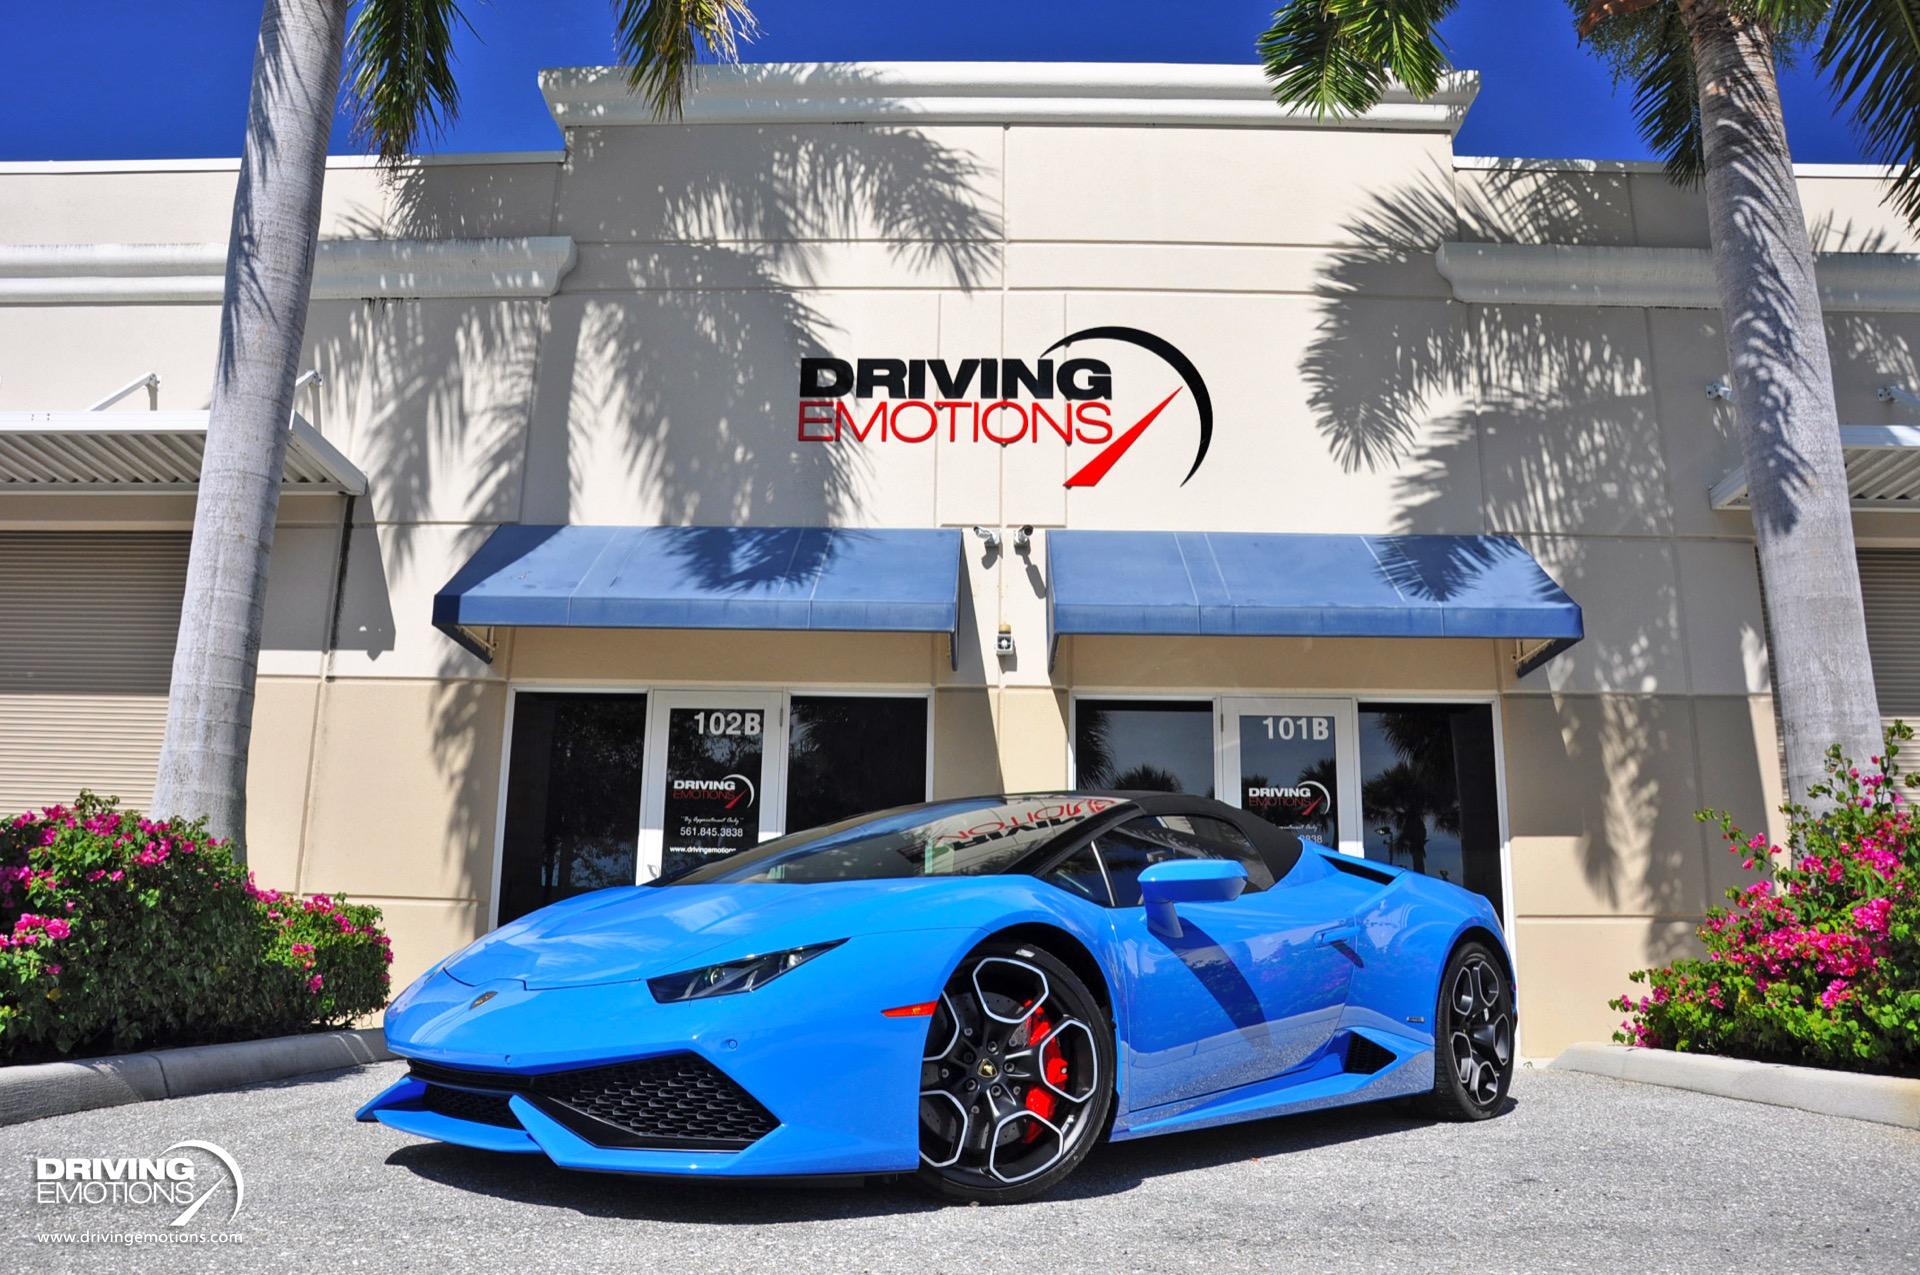 Used 2016 Lamborghini Huracan LP610-4 Spyder AD PERSONAM BLUE LE MANS PAINT! FRONT LIFT! RARE COLOR!! | Lake Park, FL